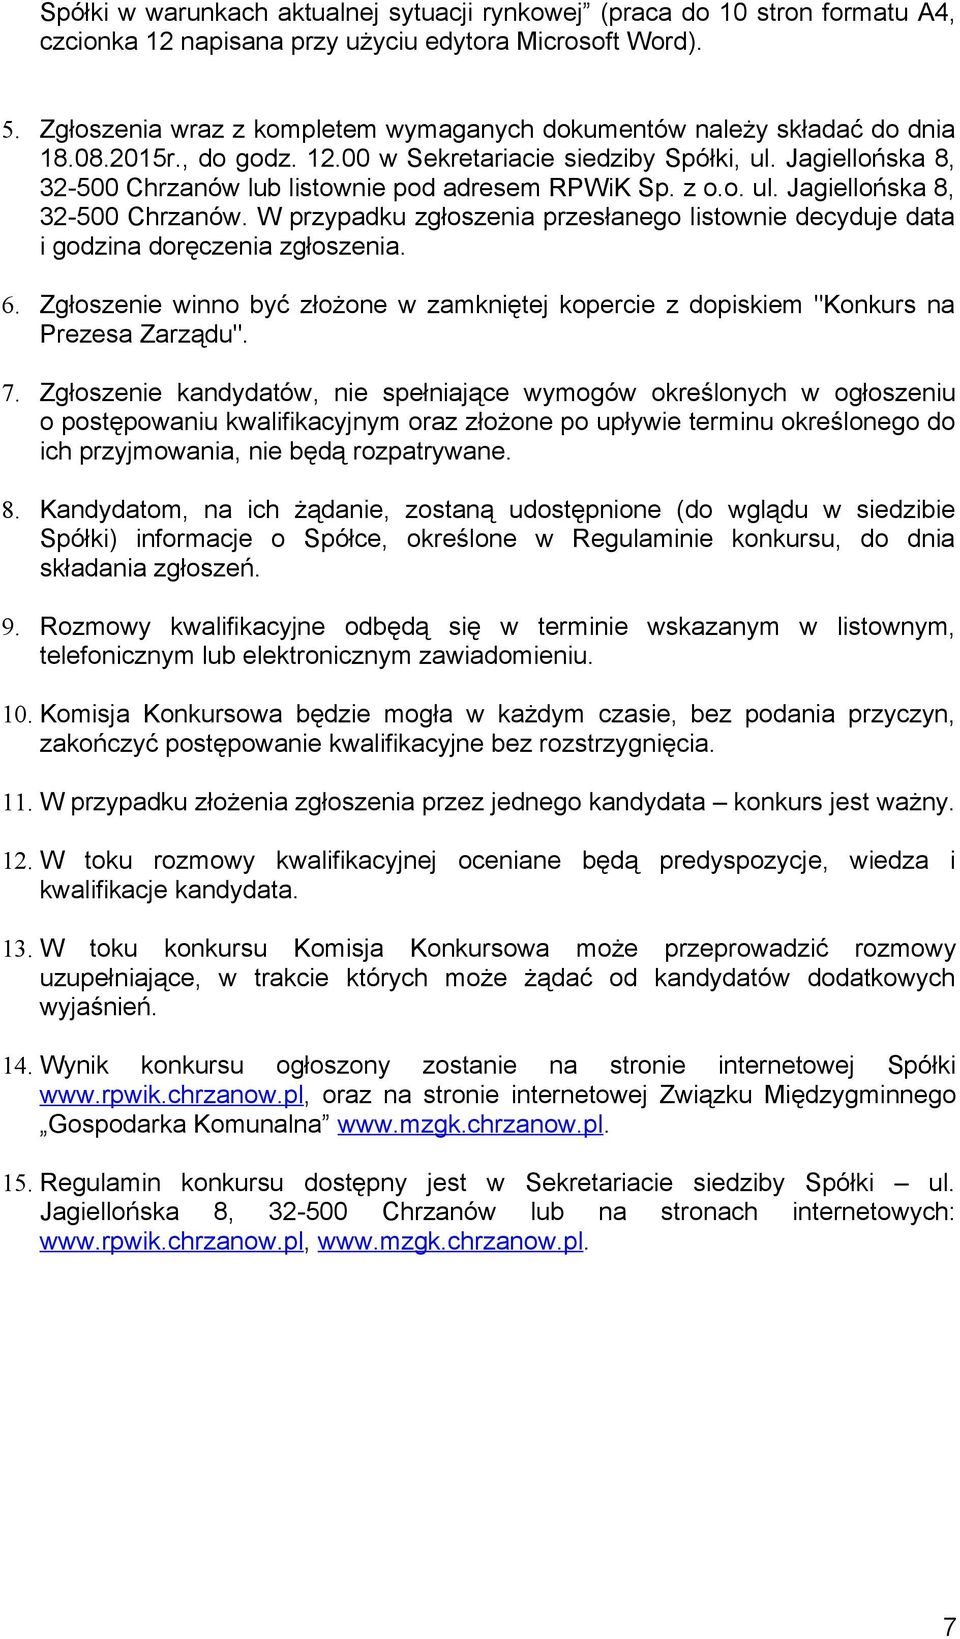 Jagiellońska 8, 32-500 Chrzanów lub listownie pod adresem RPWiK Sp. z o.o. ul. Jagiellońska 8, 32-500 Chrzanów.